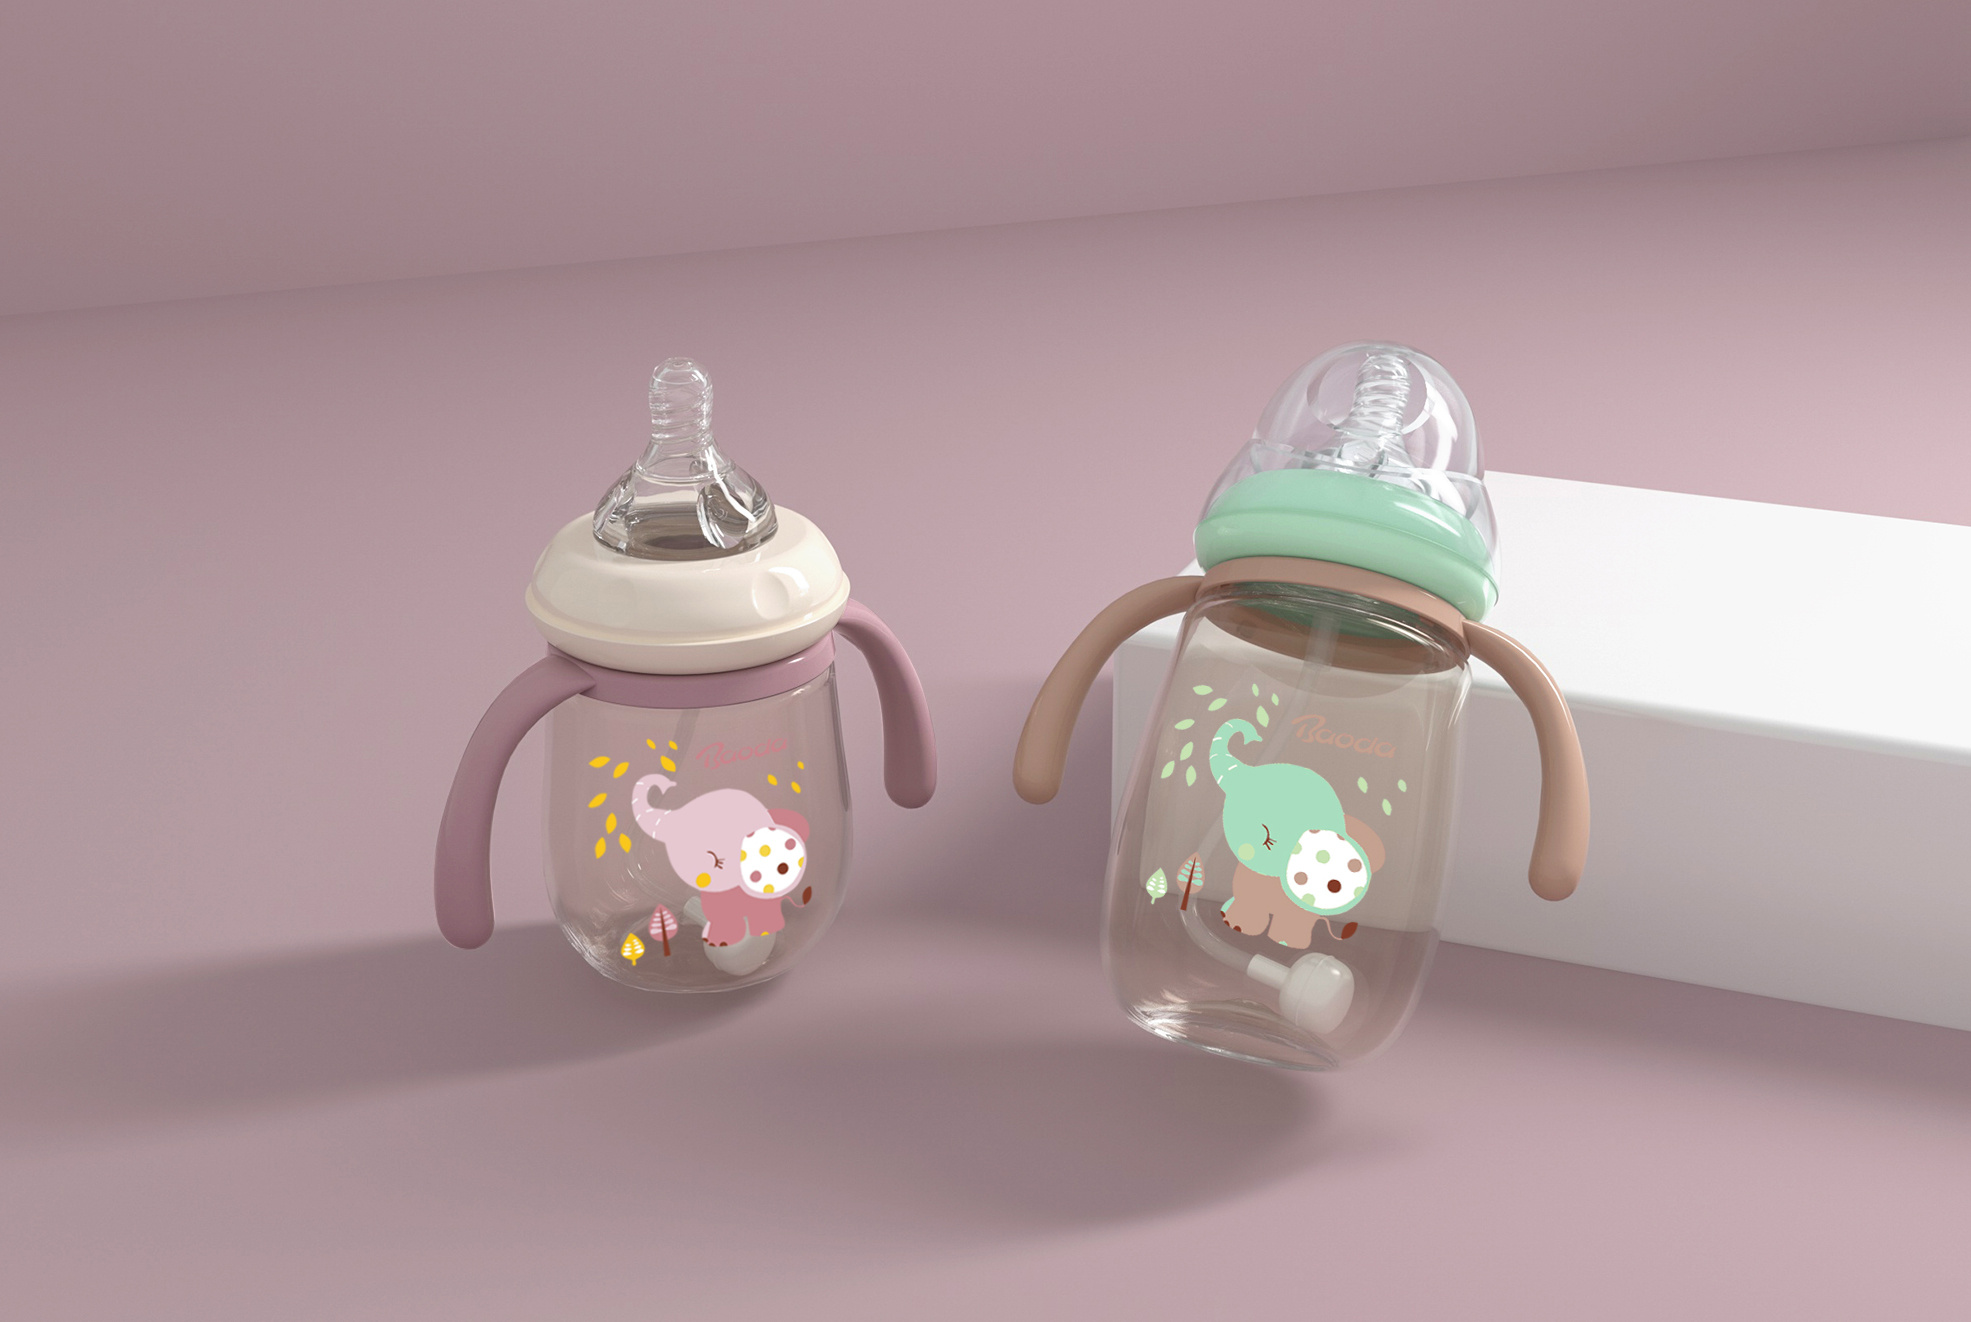 【2019 红点奖】Philips Avent Smart Baby Bottle / 智能婴儿奶瓶 - 普象网